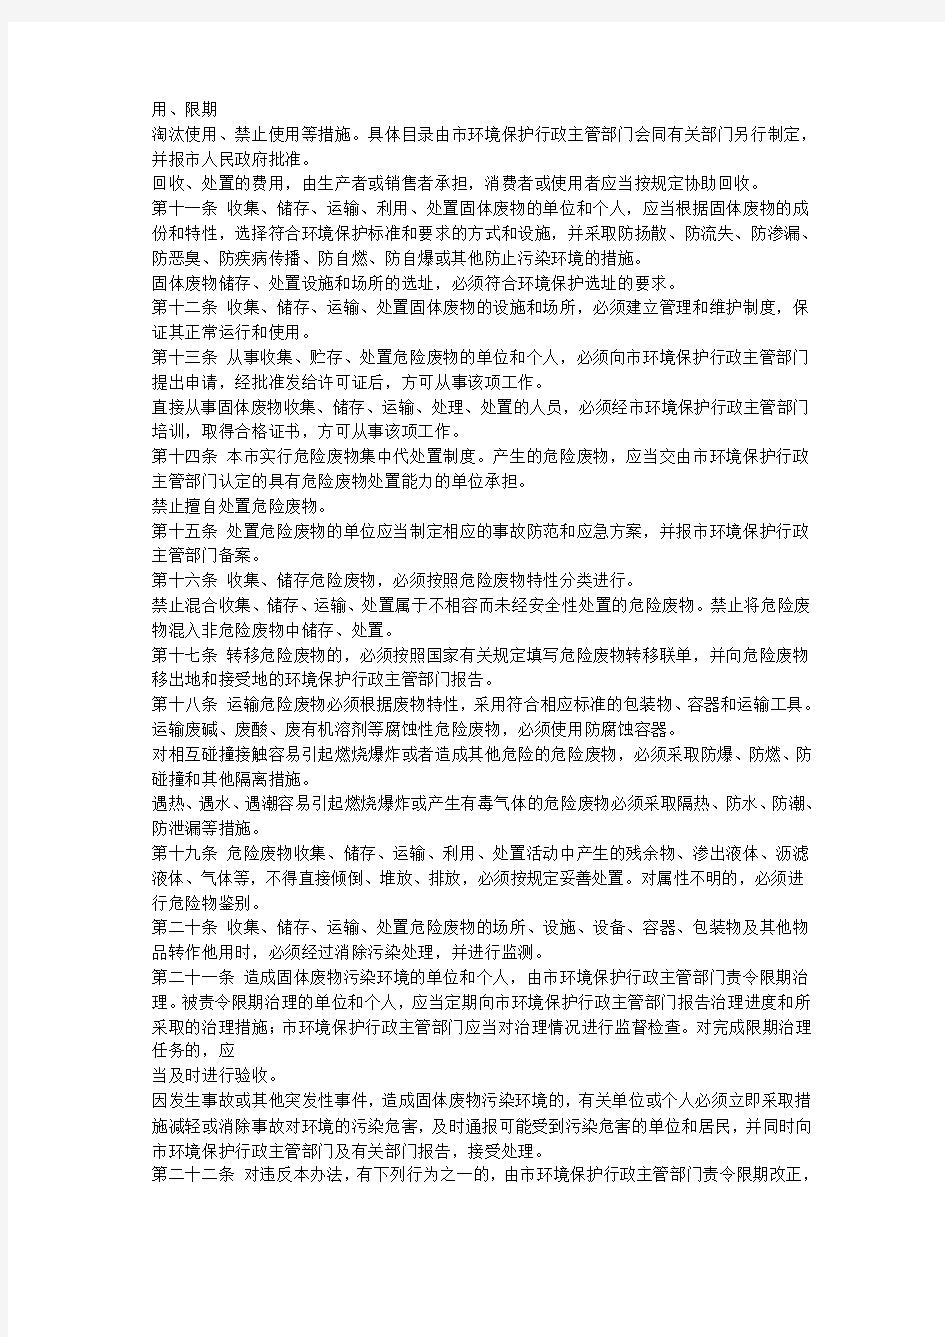 49杭州市有害固体废物管理暂行办法